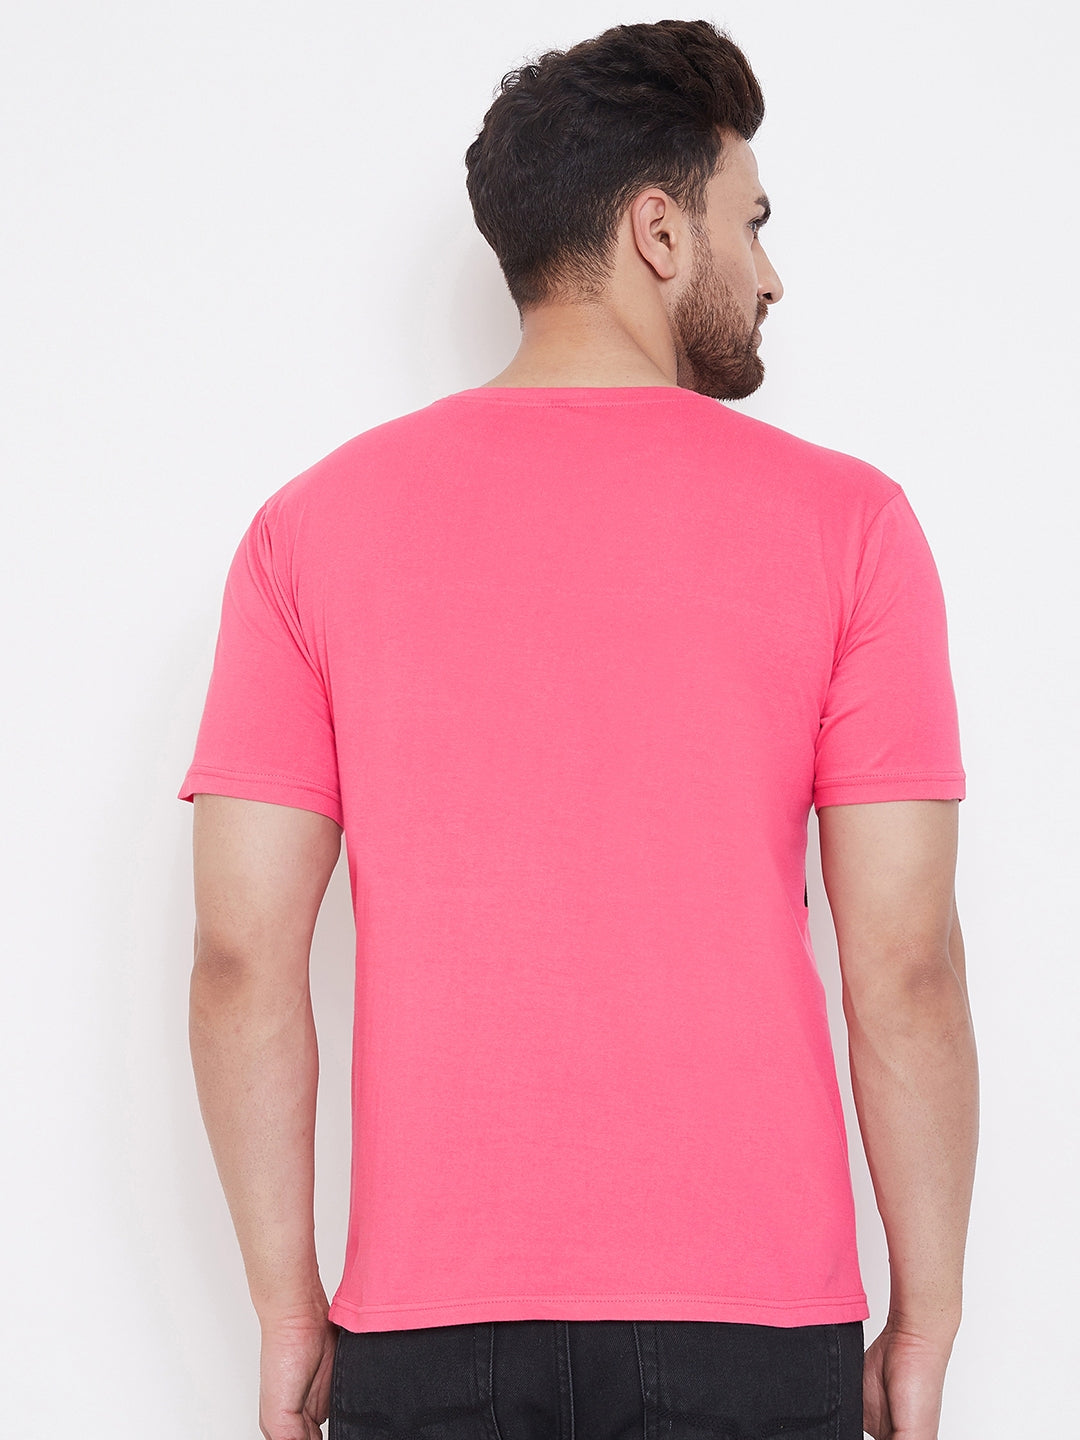 Pink/Black Men's Half Sleeves Round Neck T-Shirt